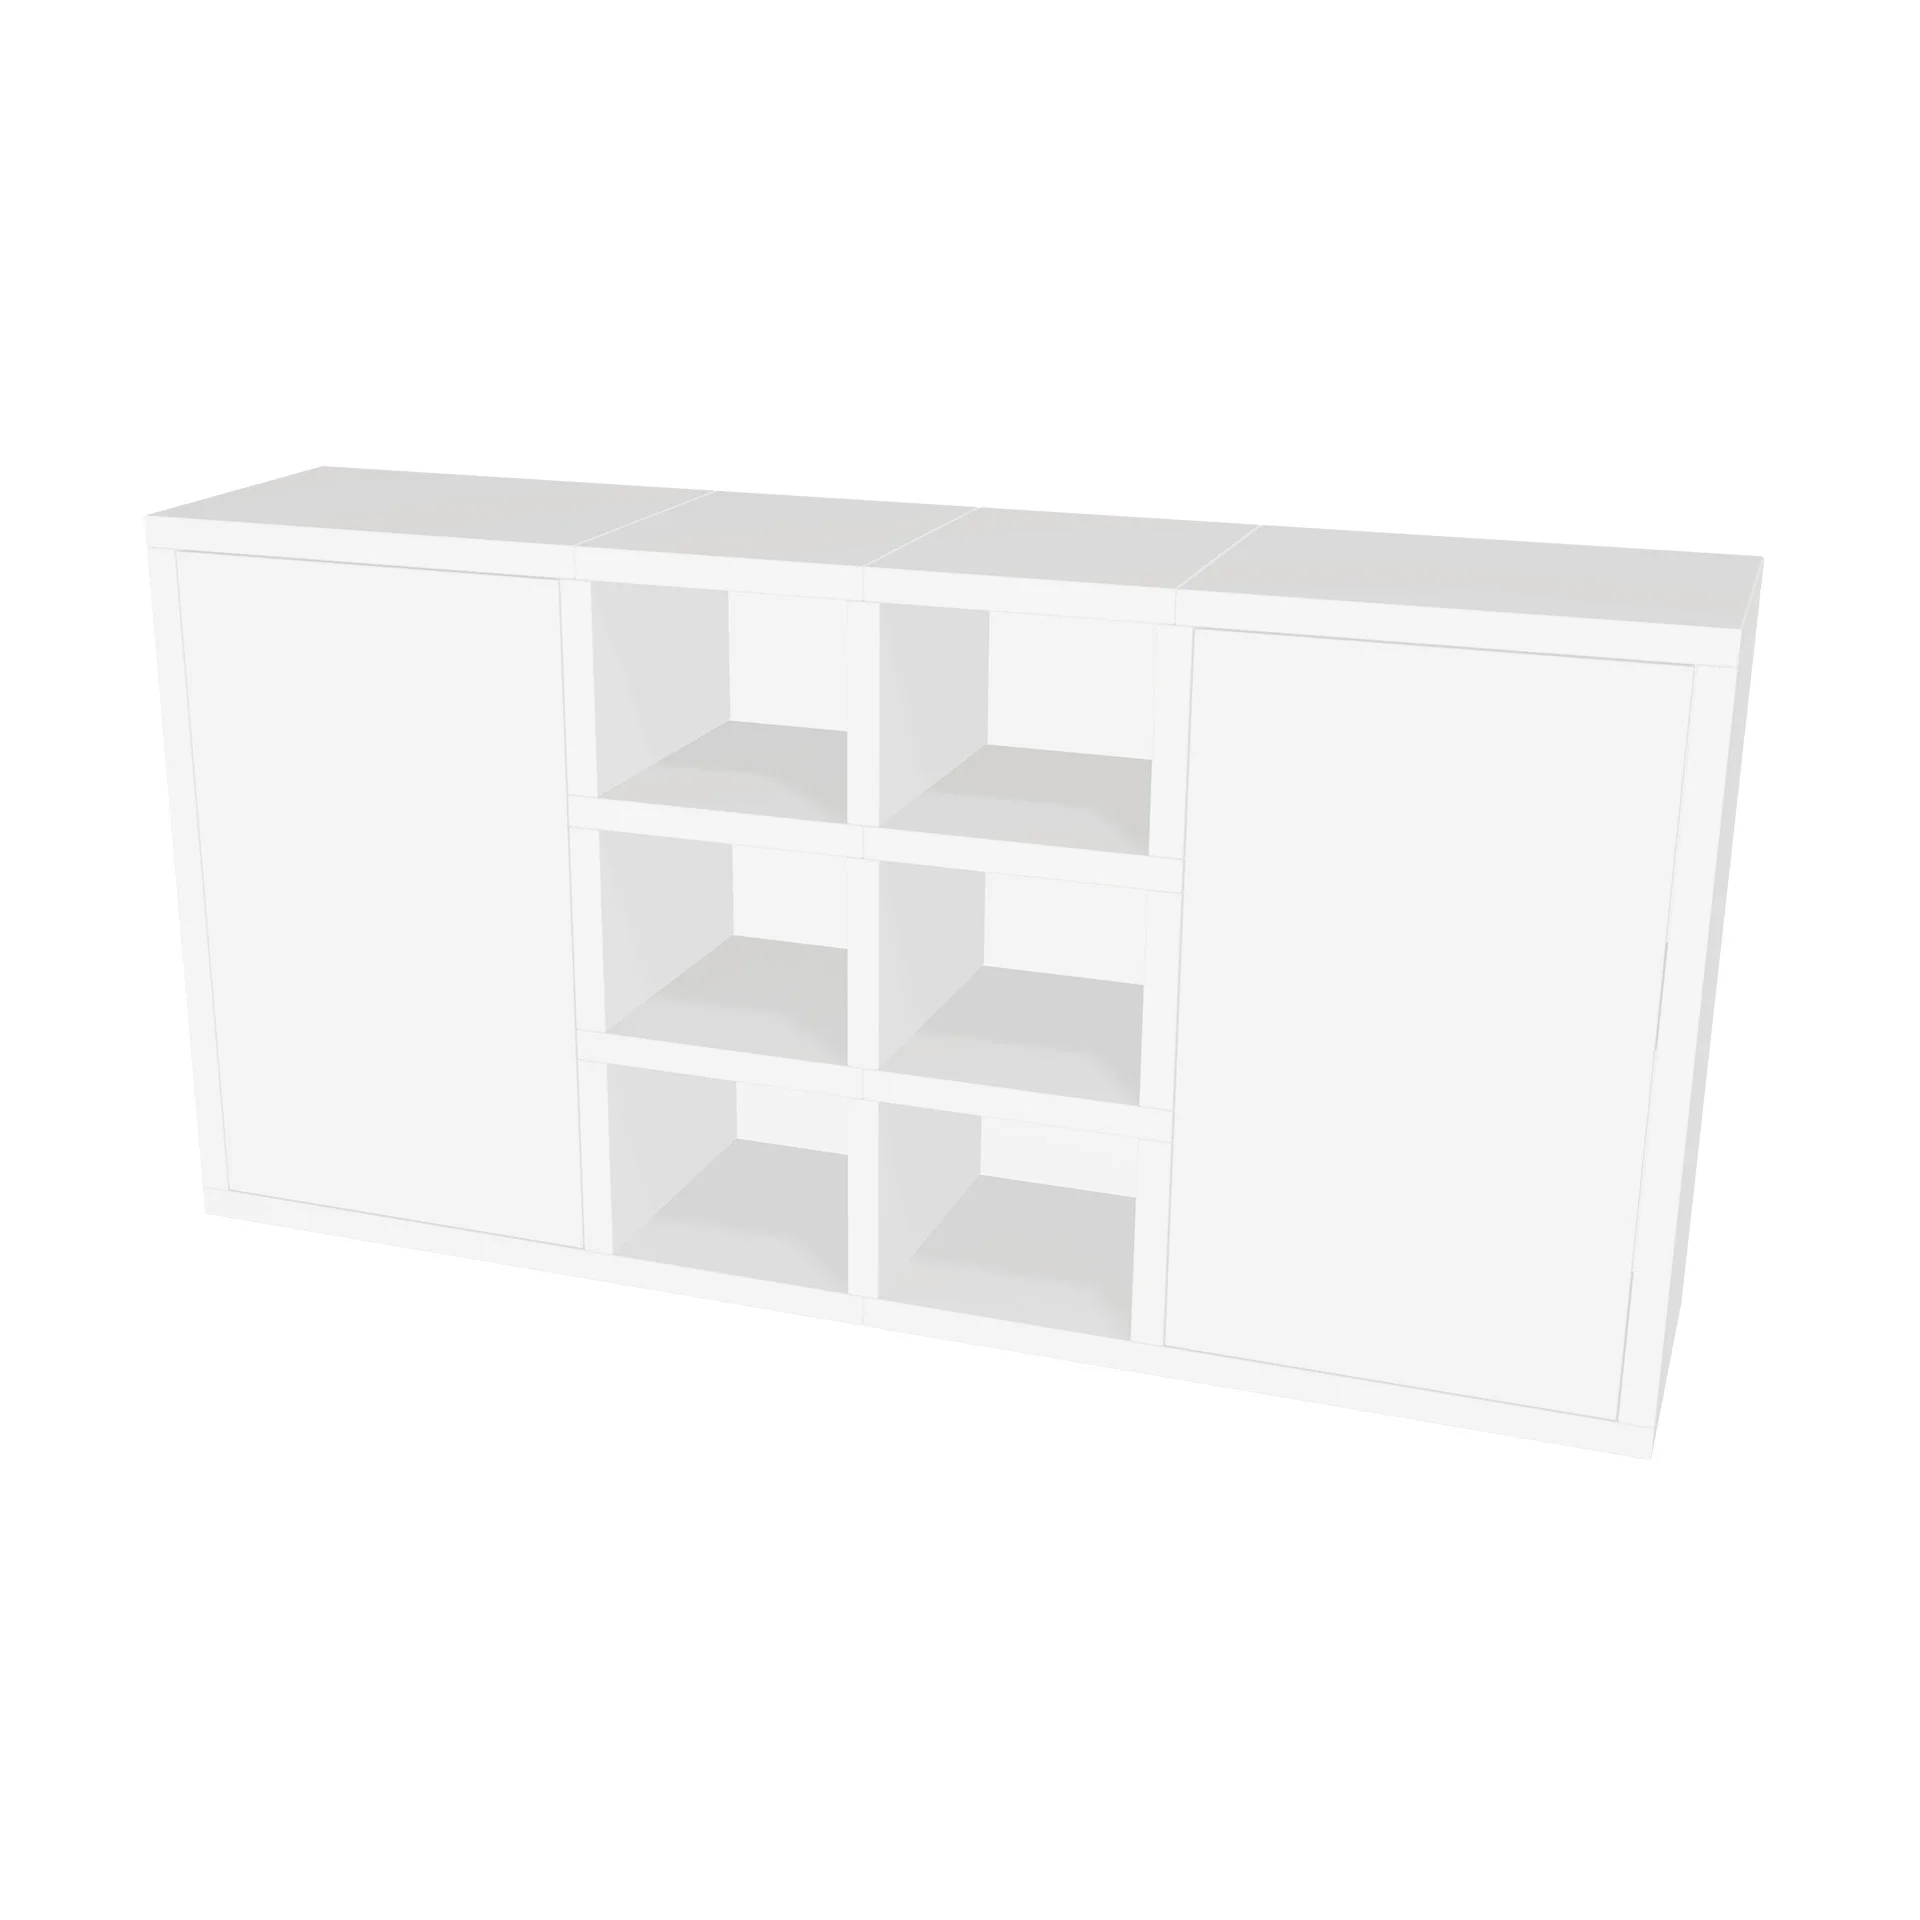 TSFC019 in white furniture board